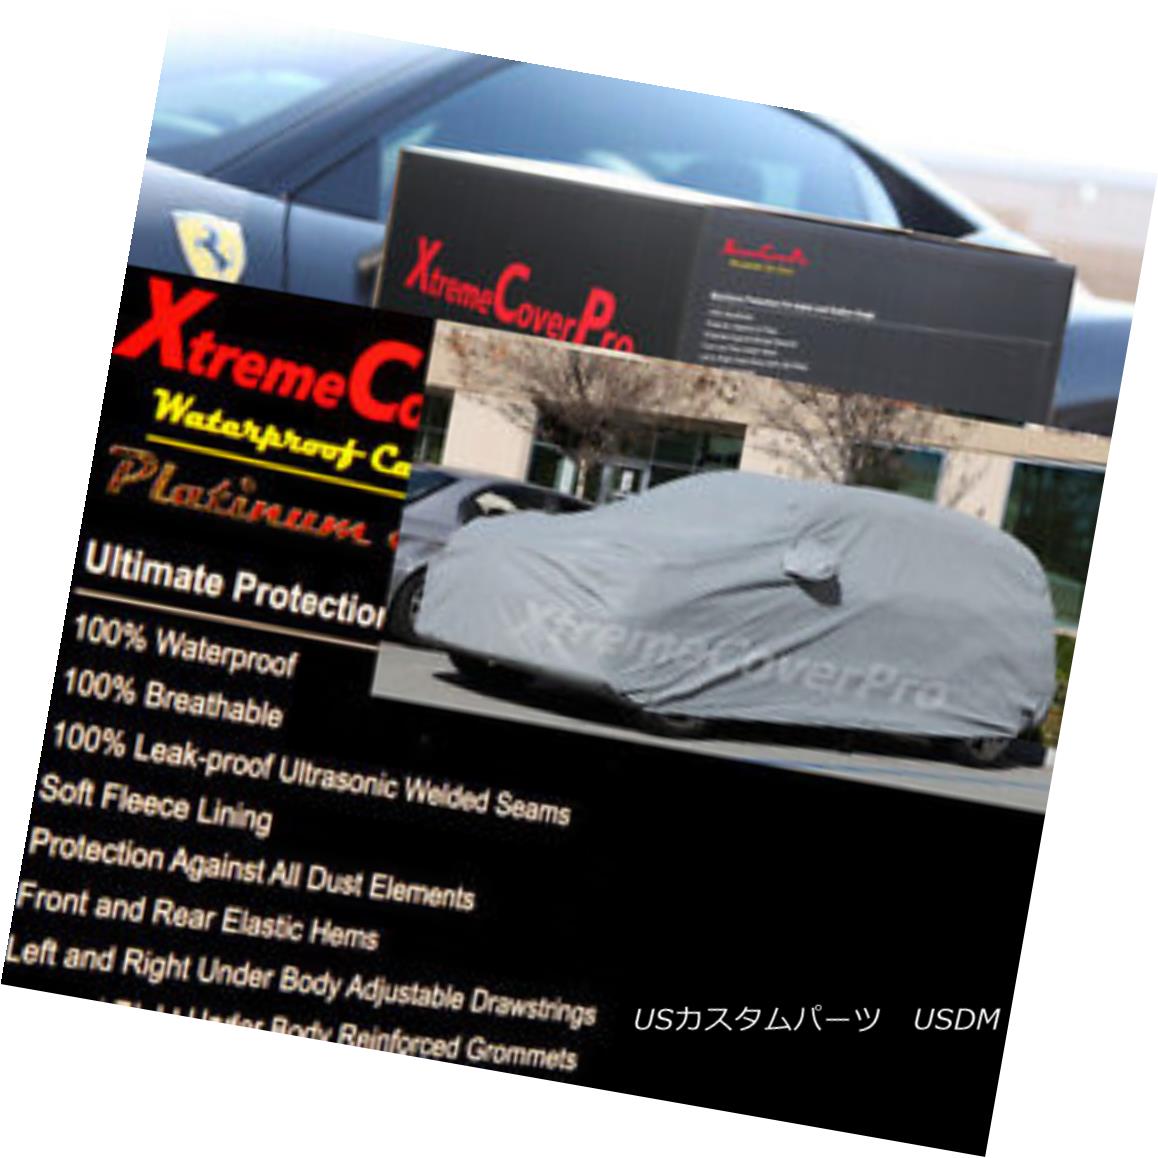 カーカバー 2015 MITSUBISHI OUTLANDER SPORT Waterproof Car Cover w/Mirror Pockets - Gray 2015 MITSUBISHI OUTLANDER SPORTミラーポケット付き防水カーカバー - グレー